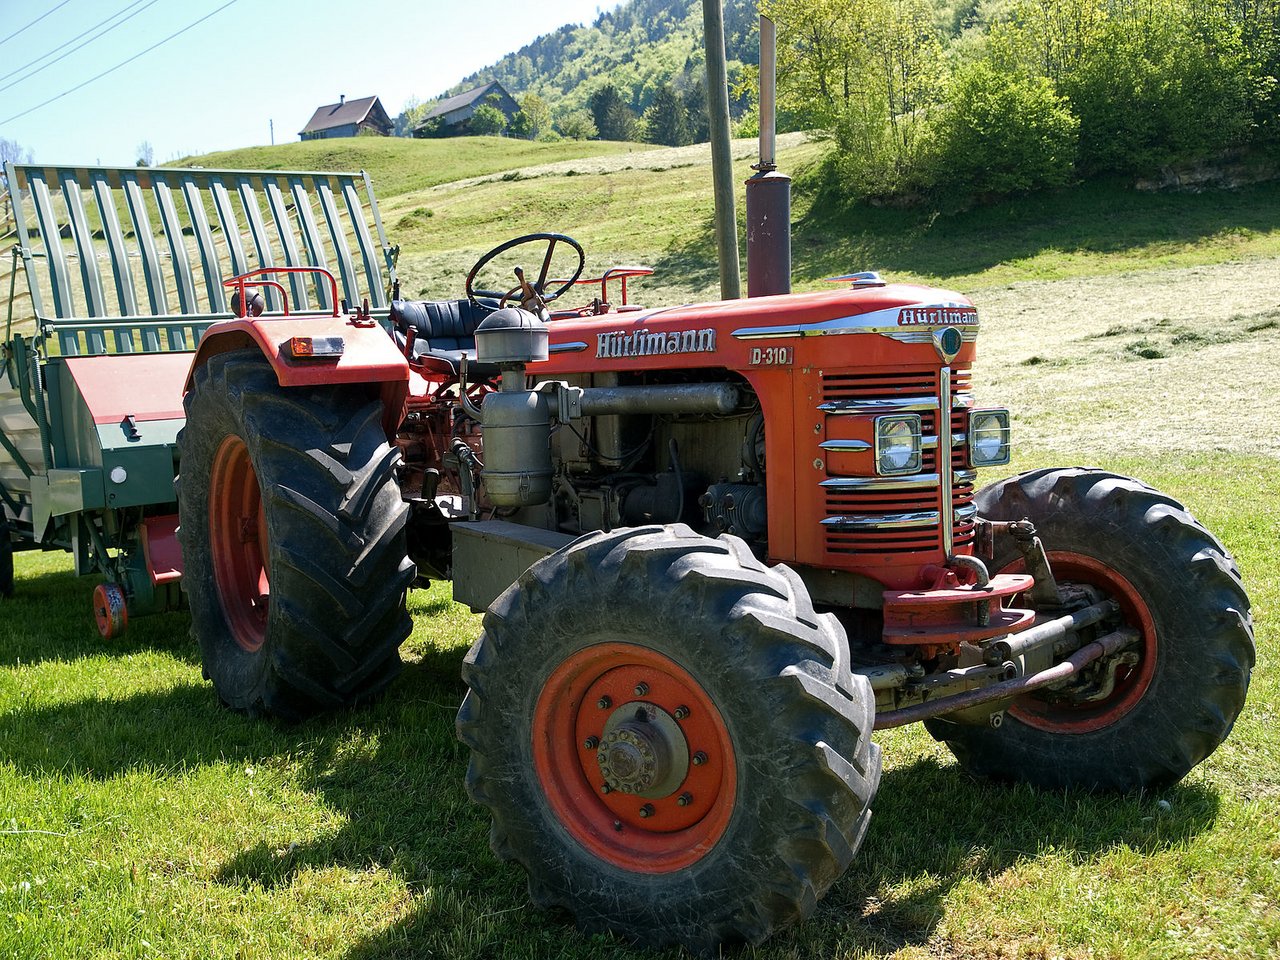 Vergangenes Jahr wurden über 193'000 Landwirtschaftsmaschinen gezählt. Dazu gehört auch dieser Hürlimann-Traktor. (Bild Wikimedia)